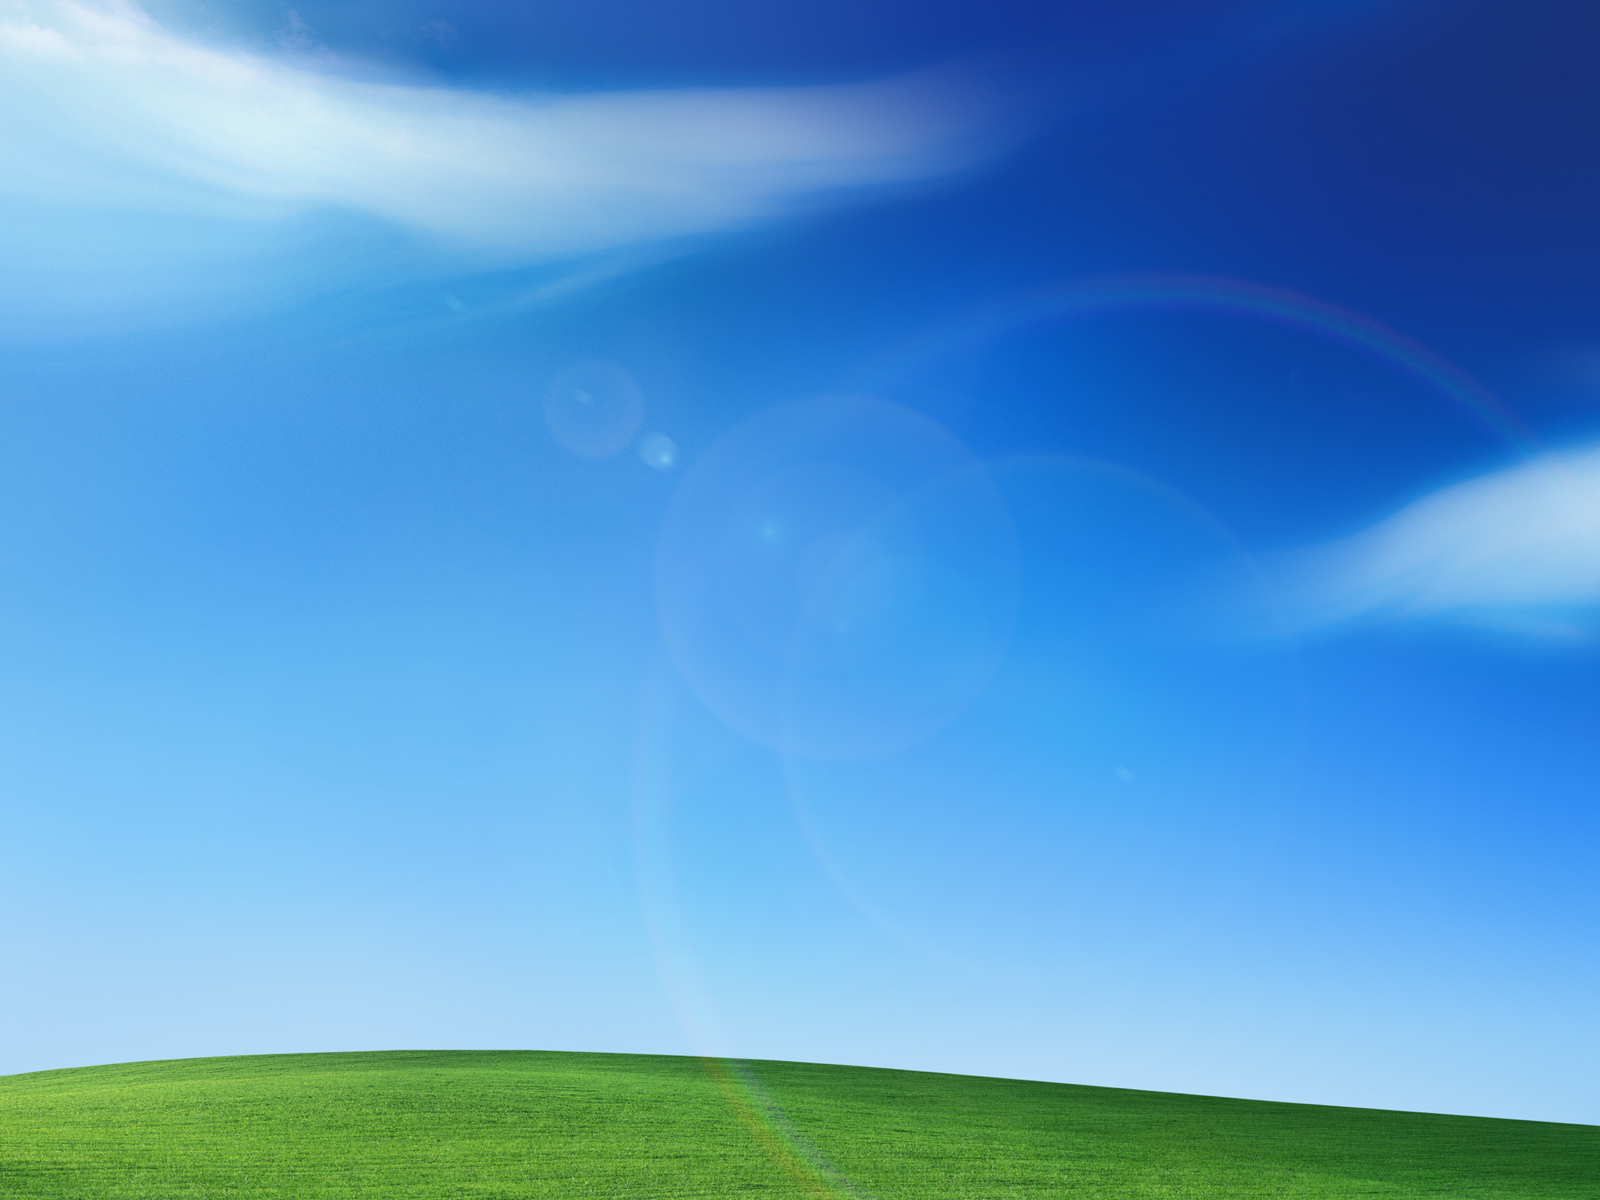 Hình nền Windows XP đem đến cho bạn không gian mới mẻ và cảm giác thư giãn khi sử dụng máy tính của mình. Những hình nền cổ điển và độc đáo sẽ chắc chắn làm bạn hài lòng. Hãy cùng tìm hiểu bộ sưu tập hình nền Windows XP và tận hưởng trải nghiệm mới lạ nhé!